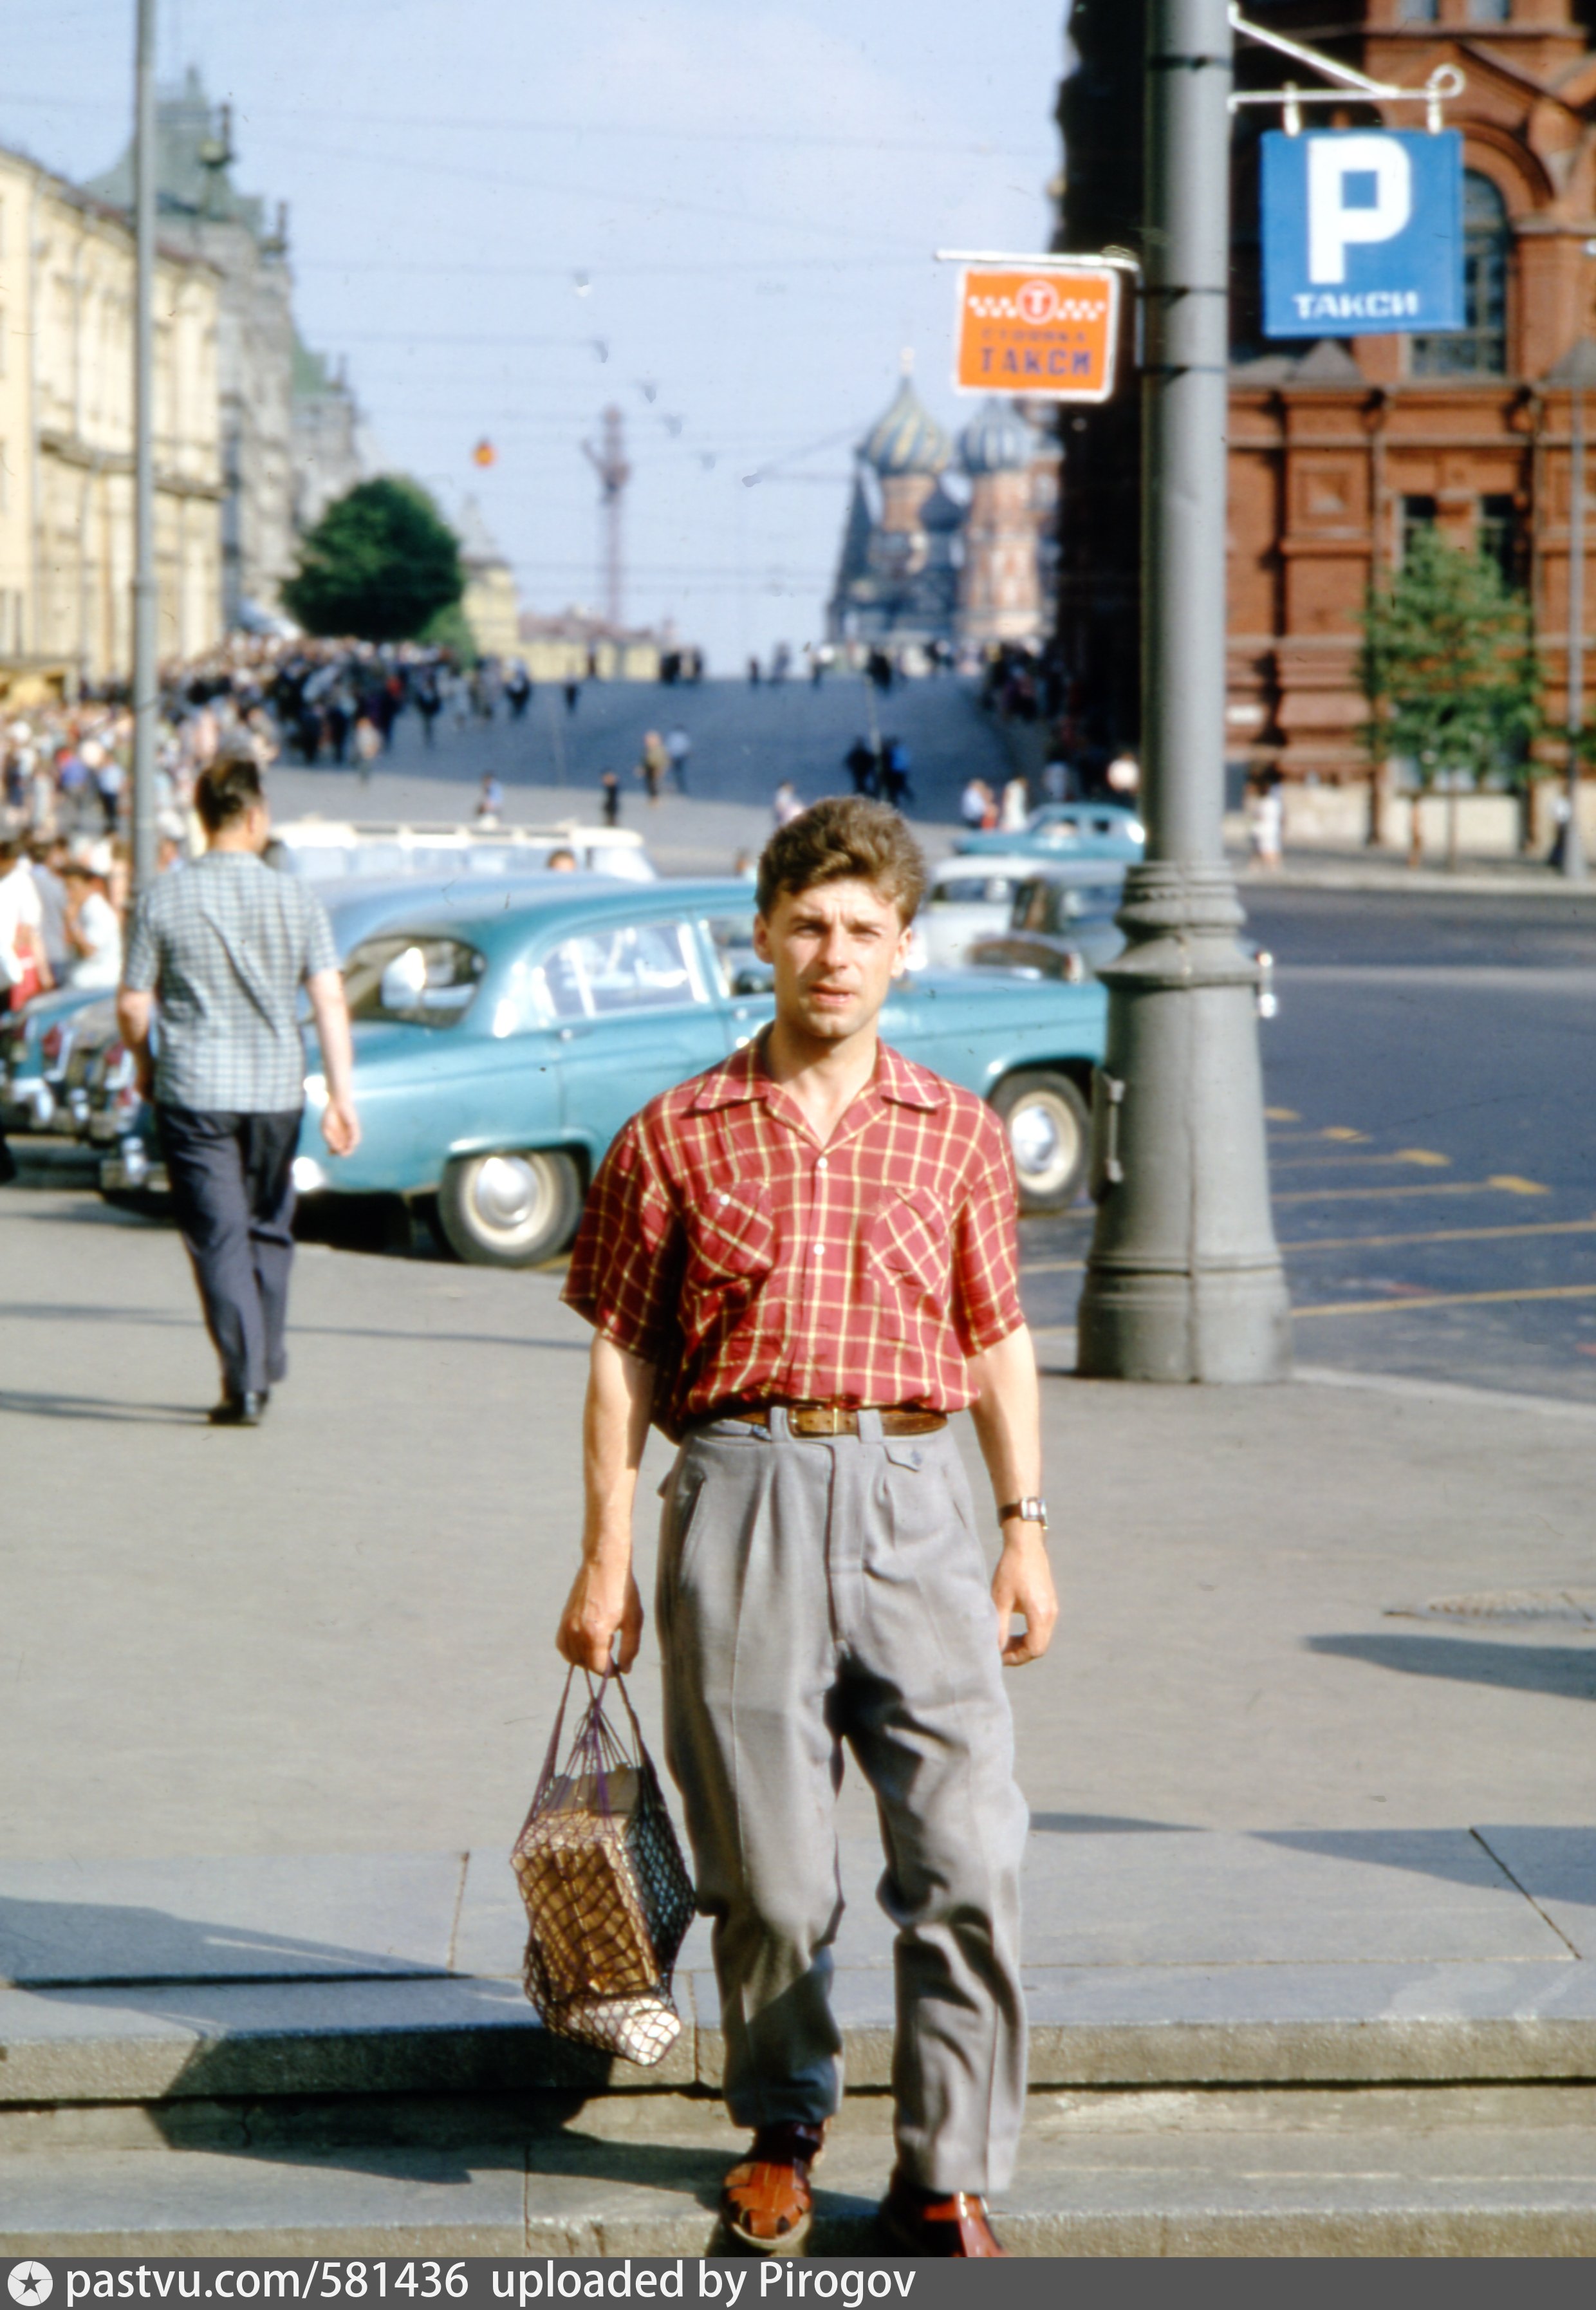 Повседневная жизнь в 90 е. Хаммонд Москва лето 1964. Снимки Томаса Хаммонда в СССР.